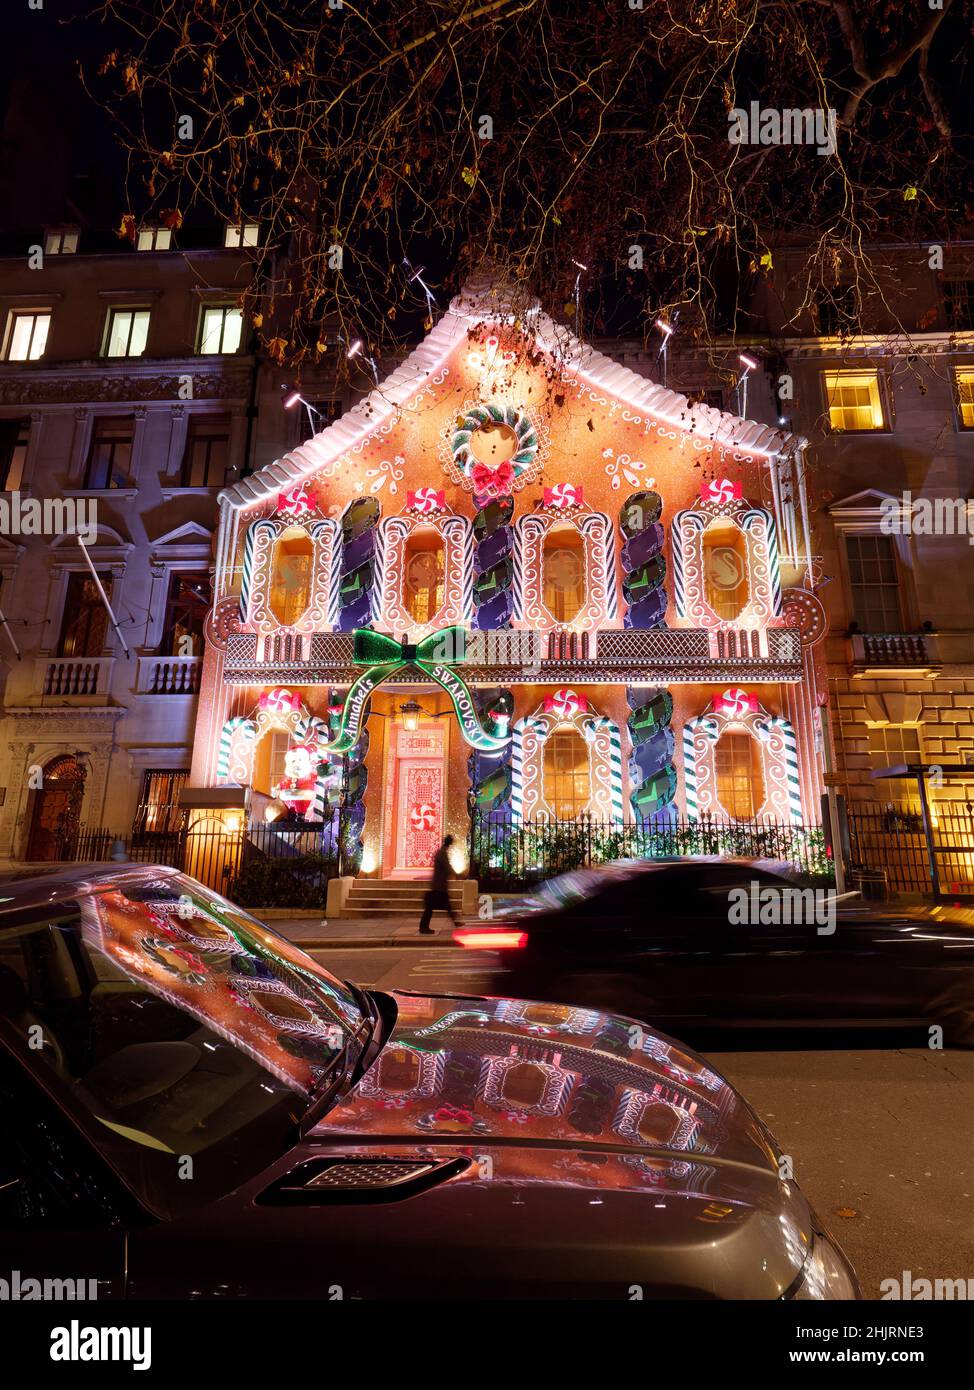 Londres, Grand Londres, Angleterre, janvier 4th 2022 : l'homme marche à côté du club privé Anabels avec sa façade de Noël Gingerbread House à Berkeley Square. Banque D'Images